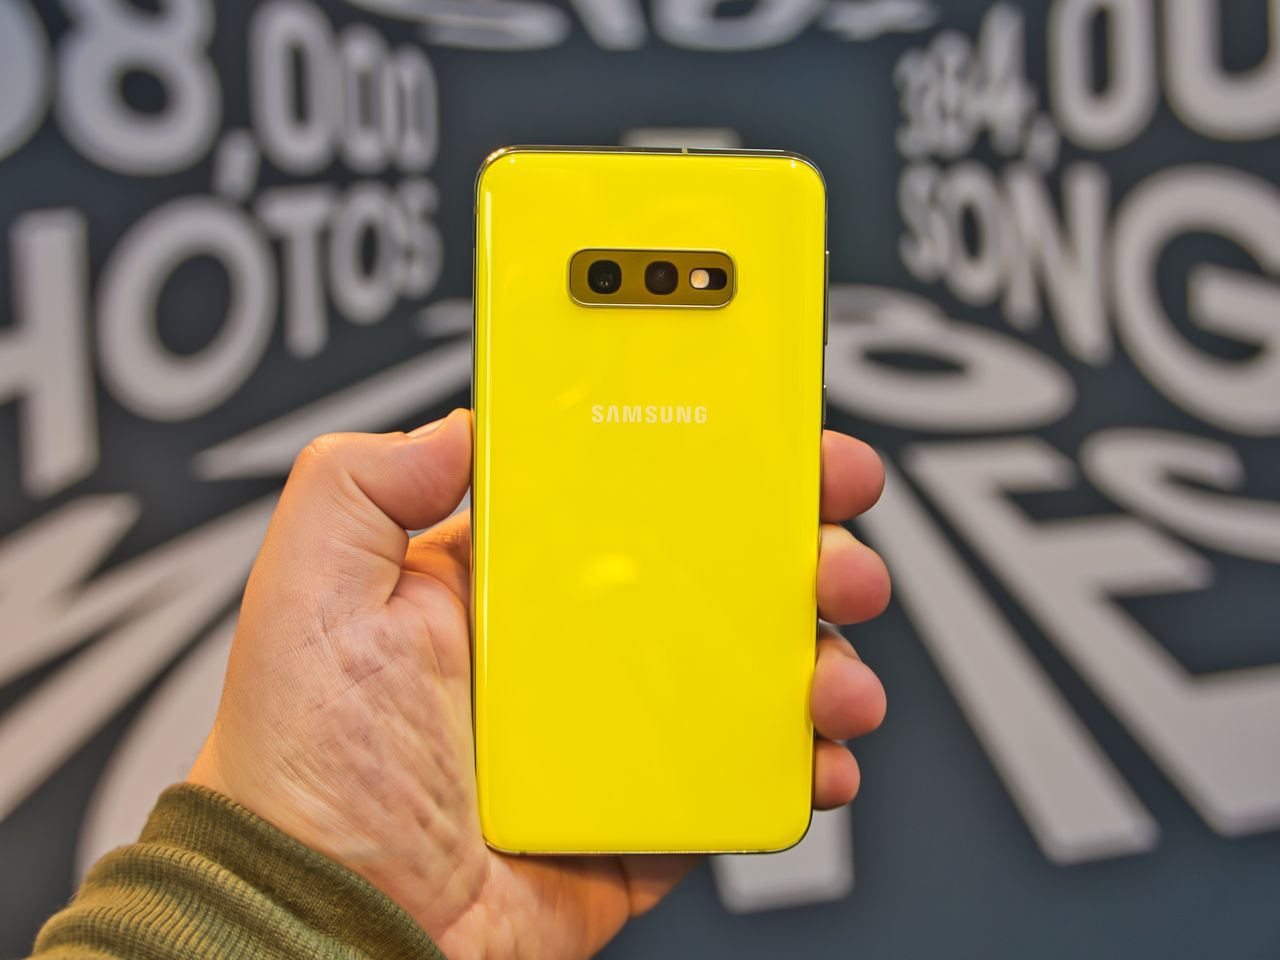 Żółty kolor zarezerwowany jest dla Galaxy S10e